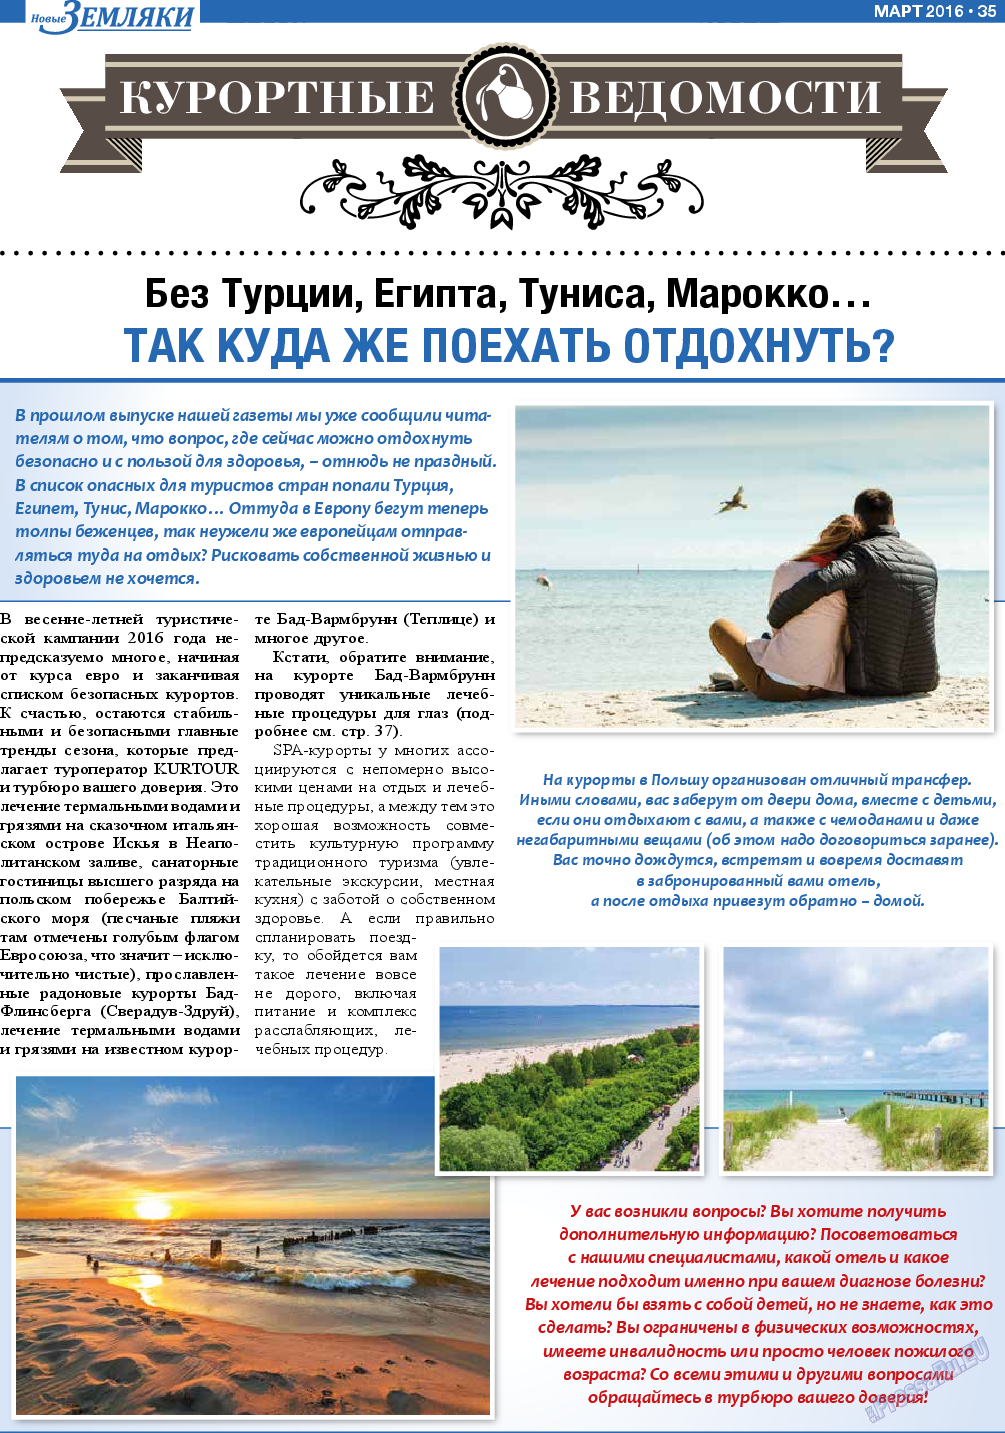 Новые Земляки, газета. 2016 №3 стр.35